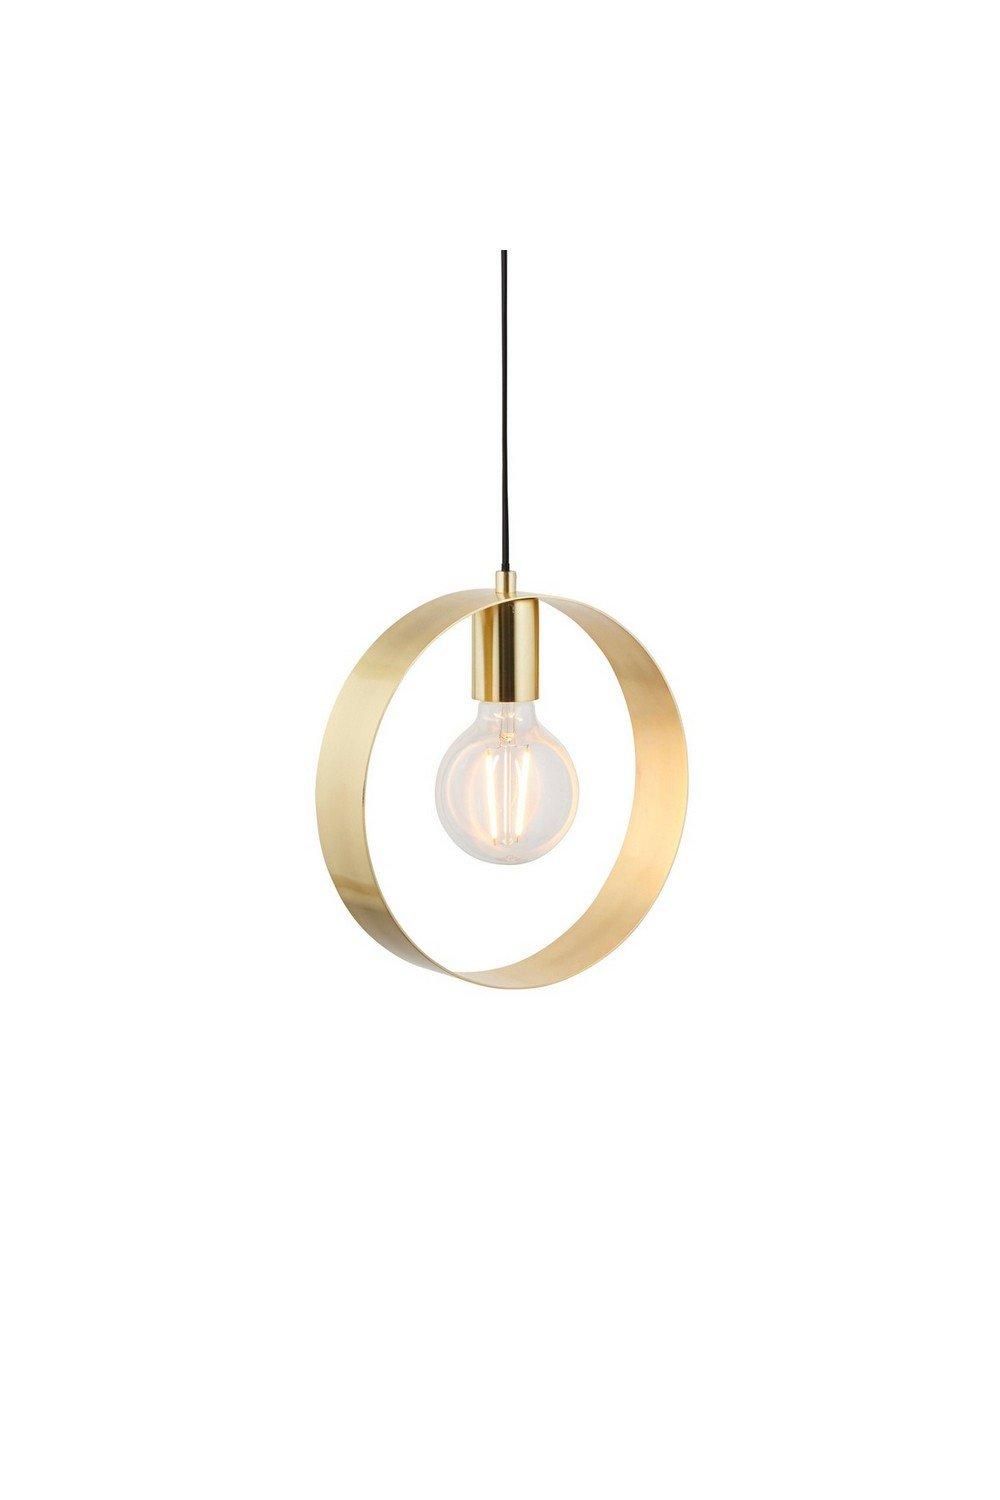 Hoop 1 Light Ceiling Pendant Brushed Brass E27